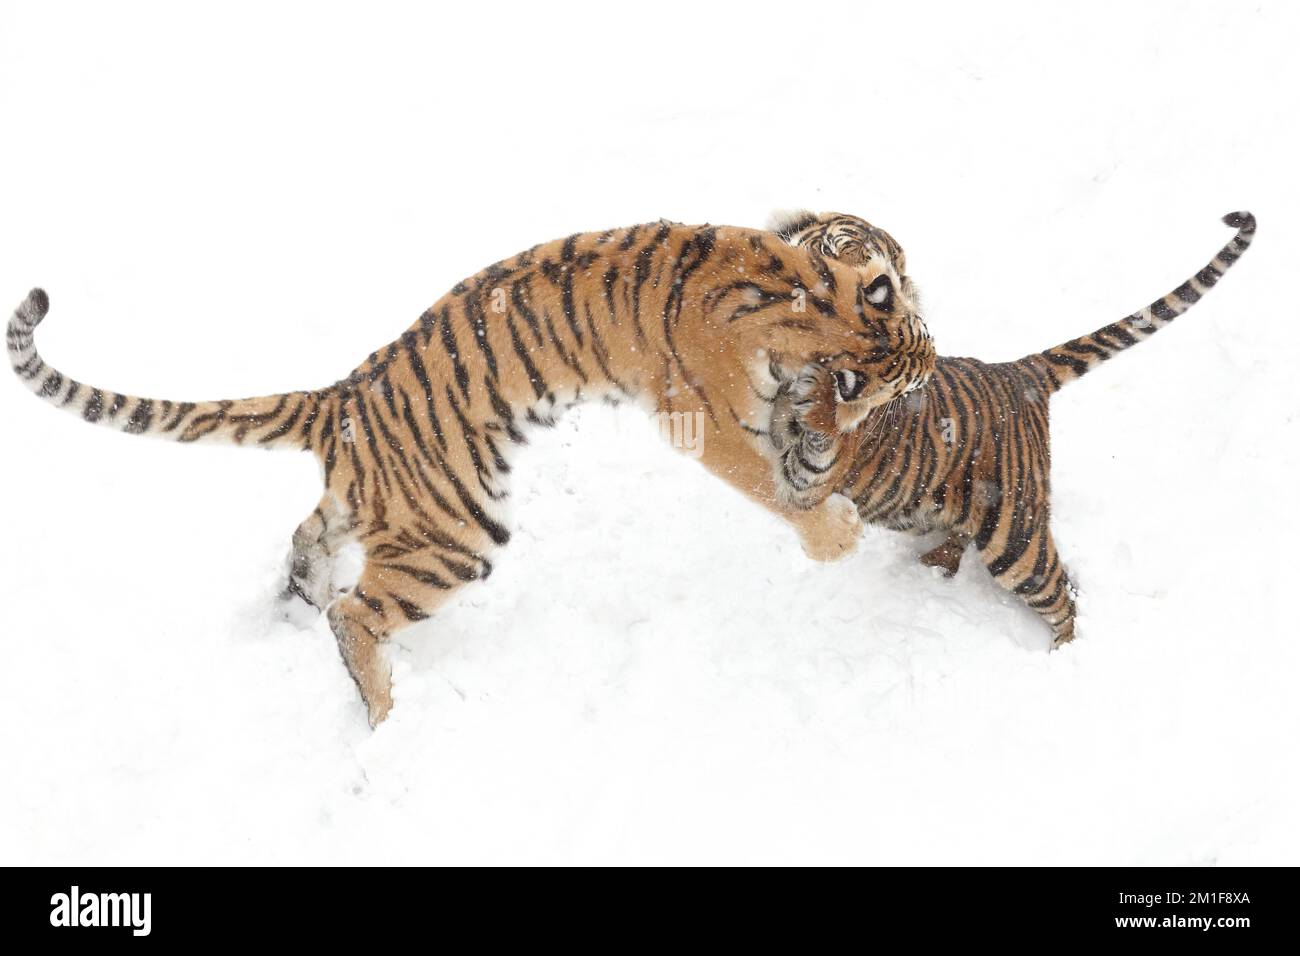 Attacco di neve. Sumatran e Amur Tigers giocano durante un fine settimana innevato a Dudley Zoological Gardens, England.Dudley Zoo, UK: Immagini GIOCOSE mostrano una tigre s. Foto Stock